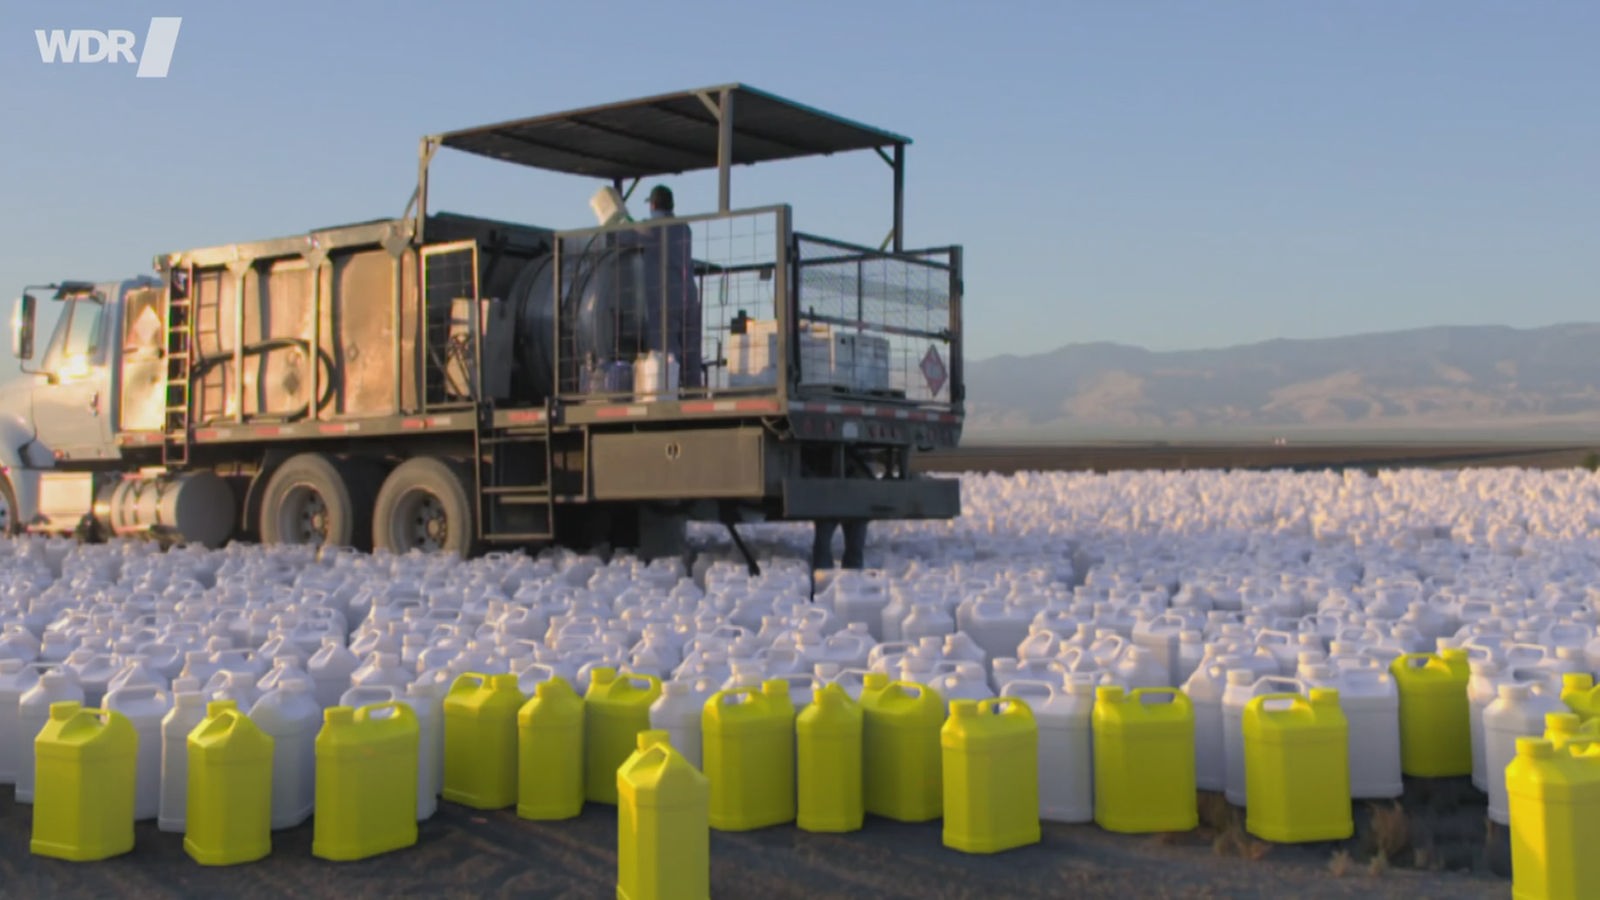 Ein landwirtschaftliches Fahrzeug auf dem Acker, davor zahllose Plastikcontainer